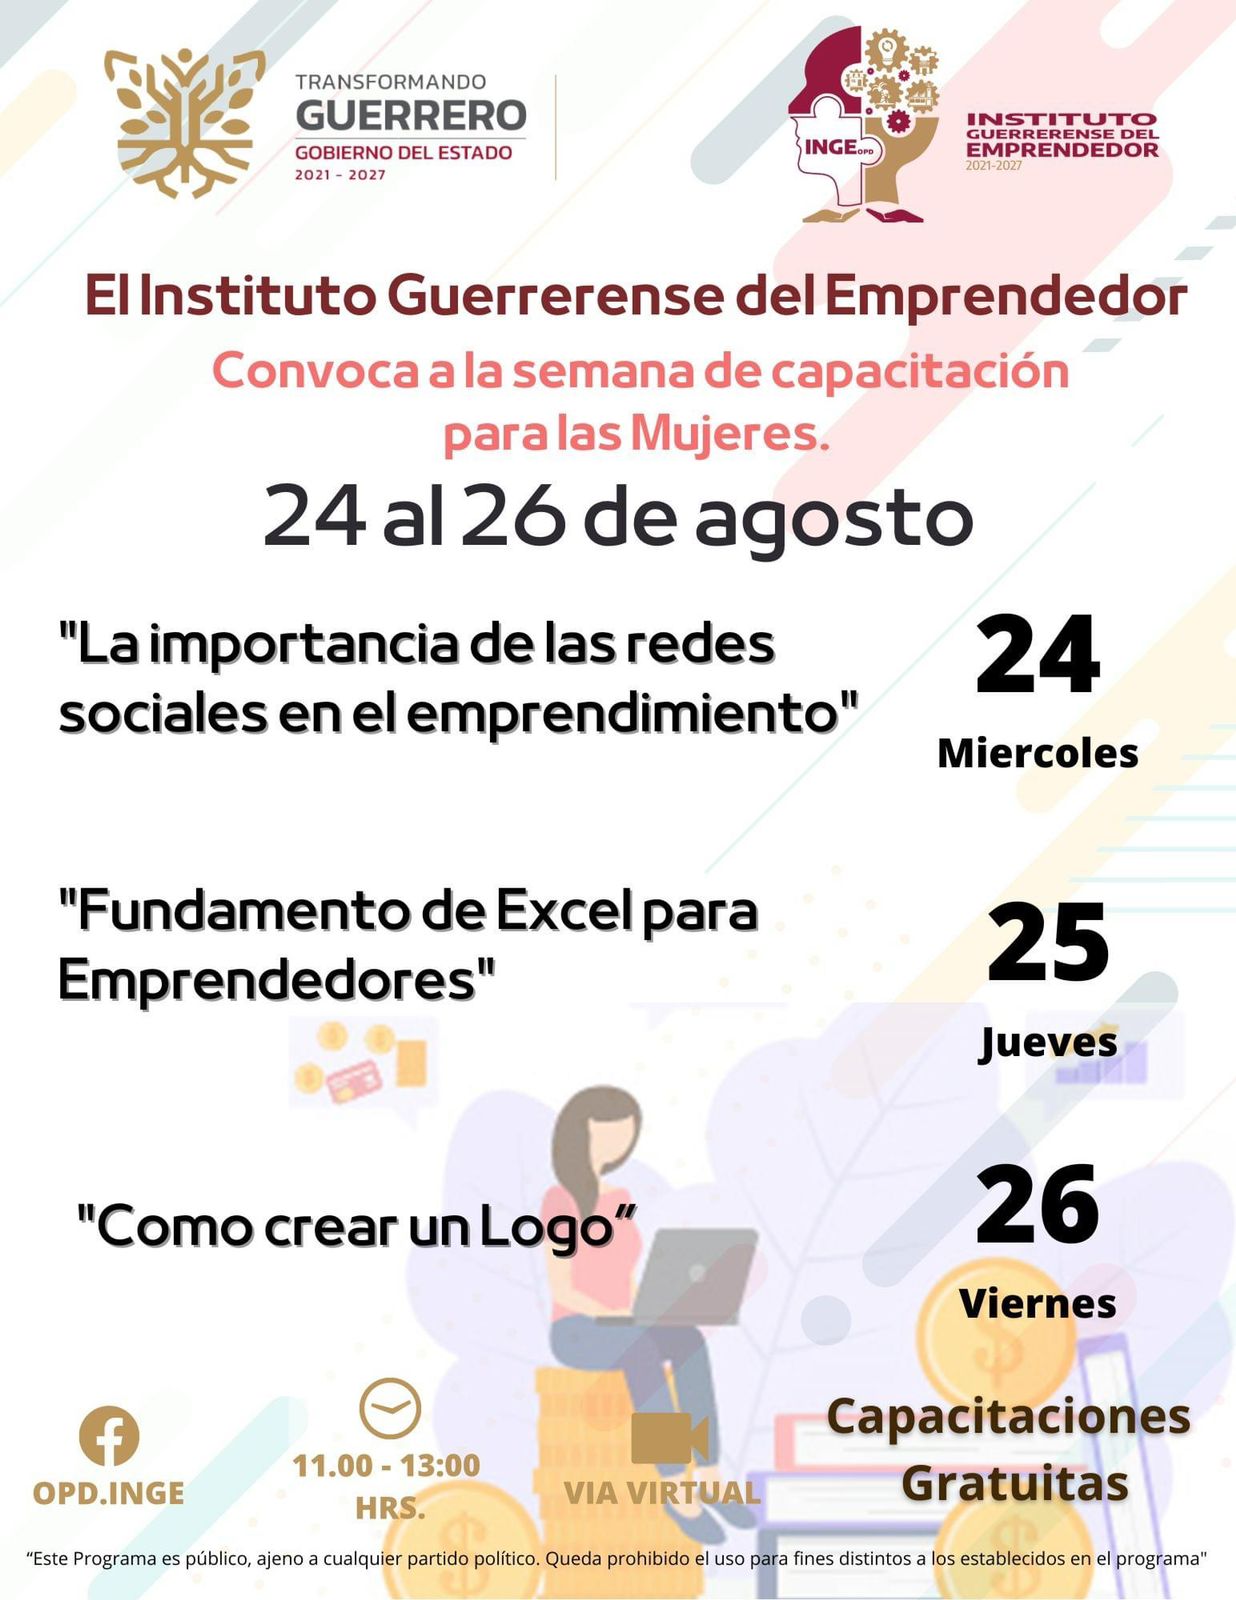 El Instituto Guerrerense del Emprendedor convoca a las mujeres a la semana de capacitaciones